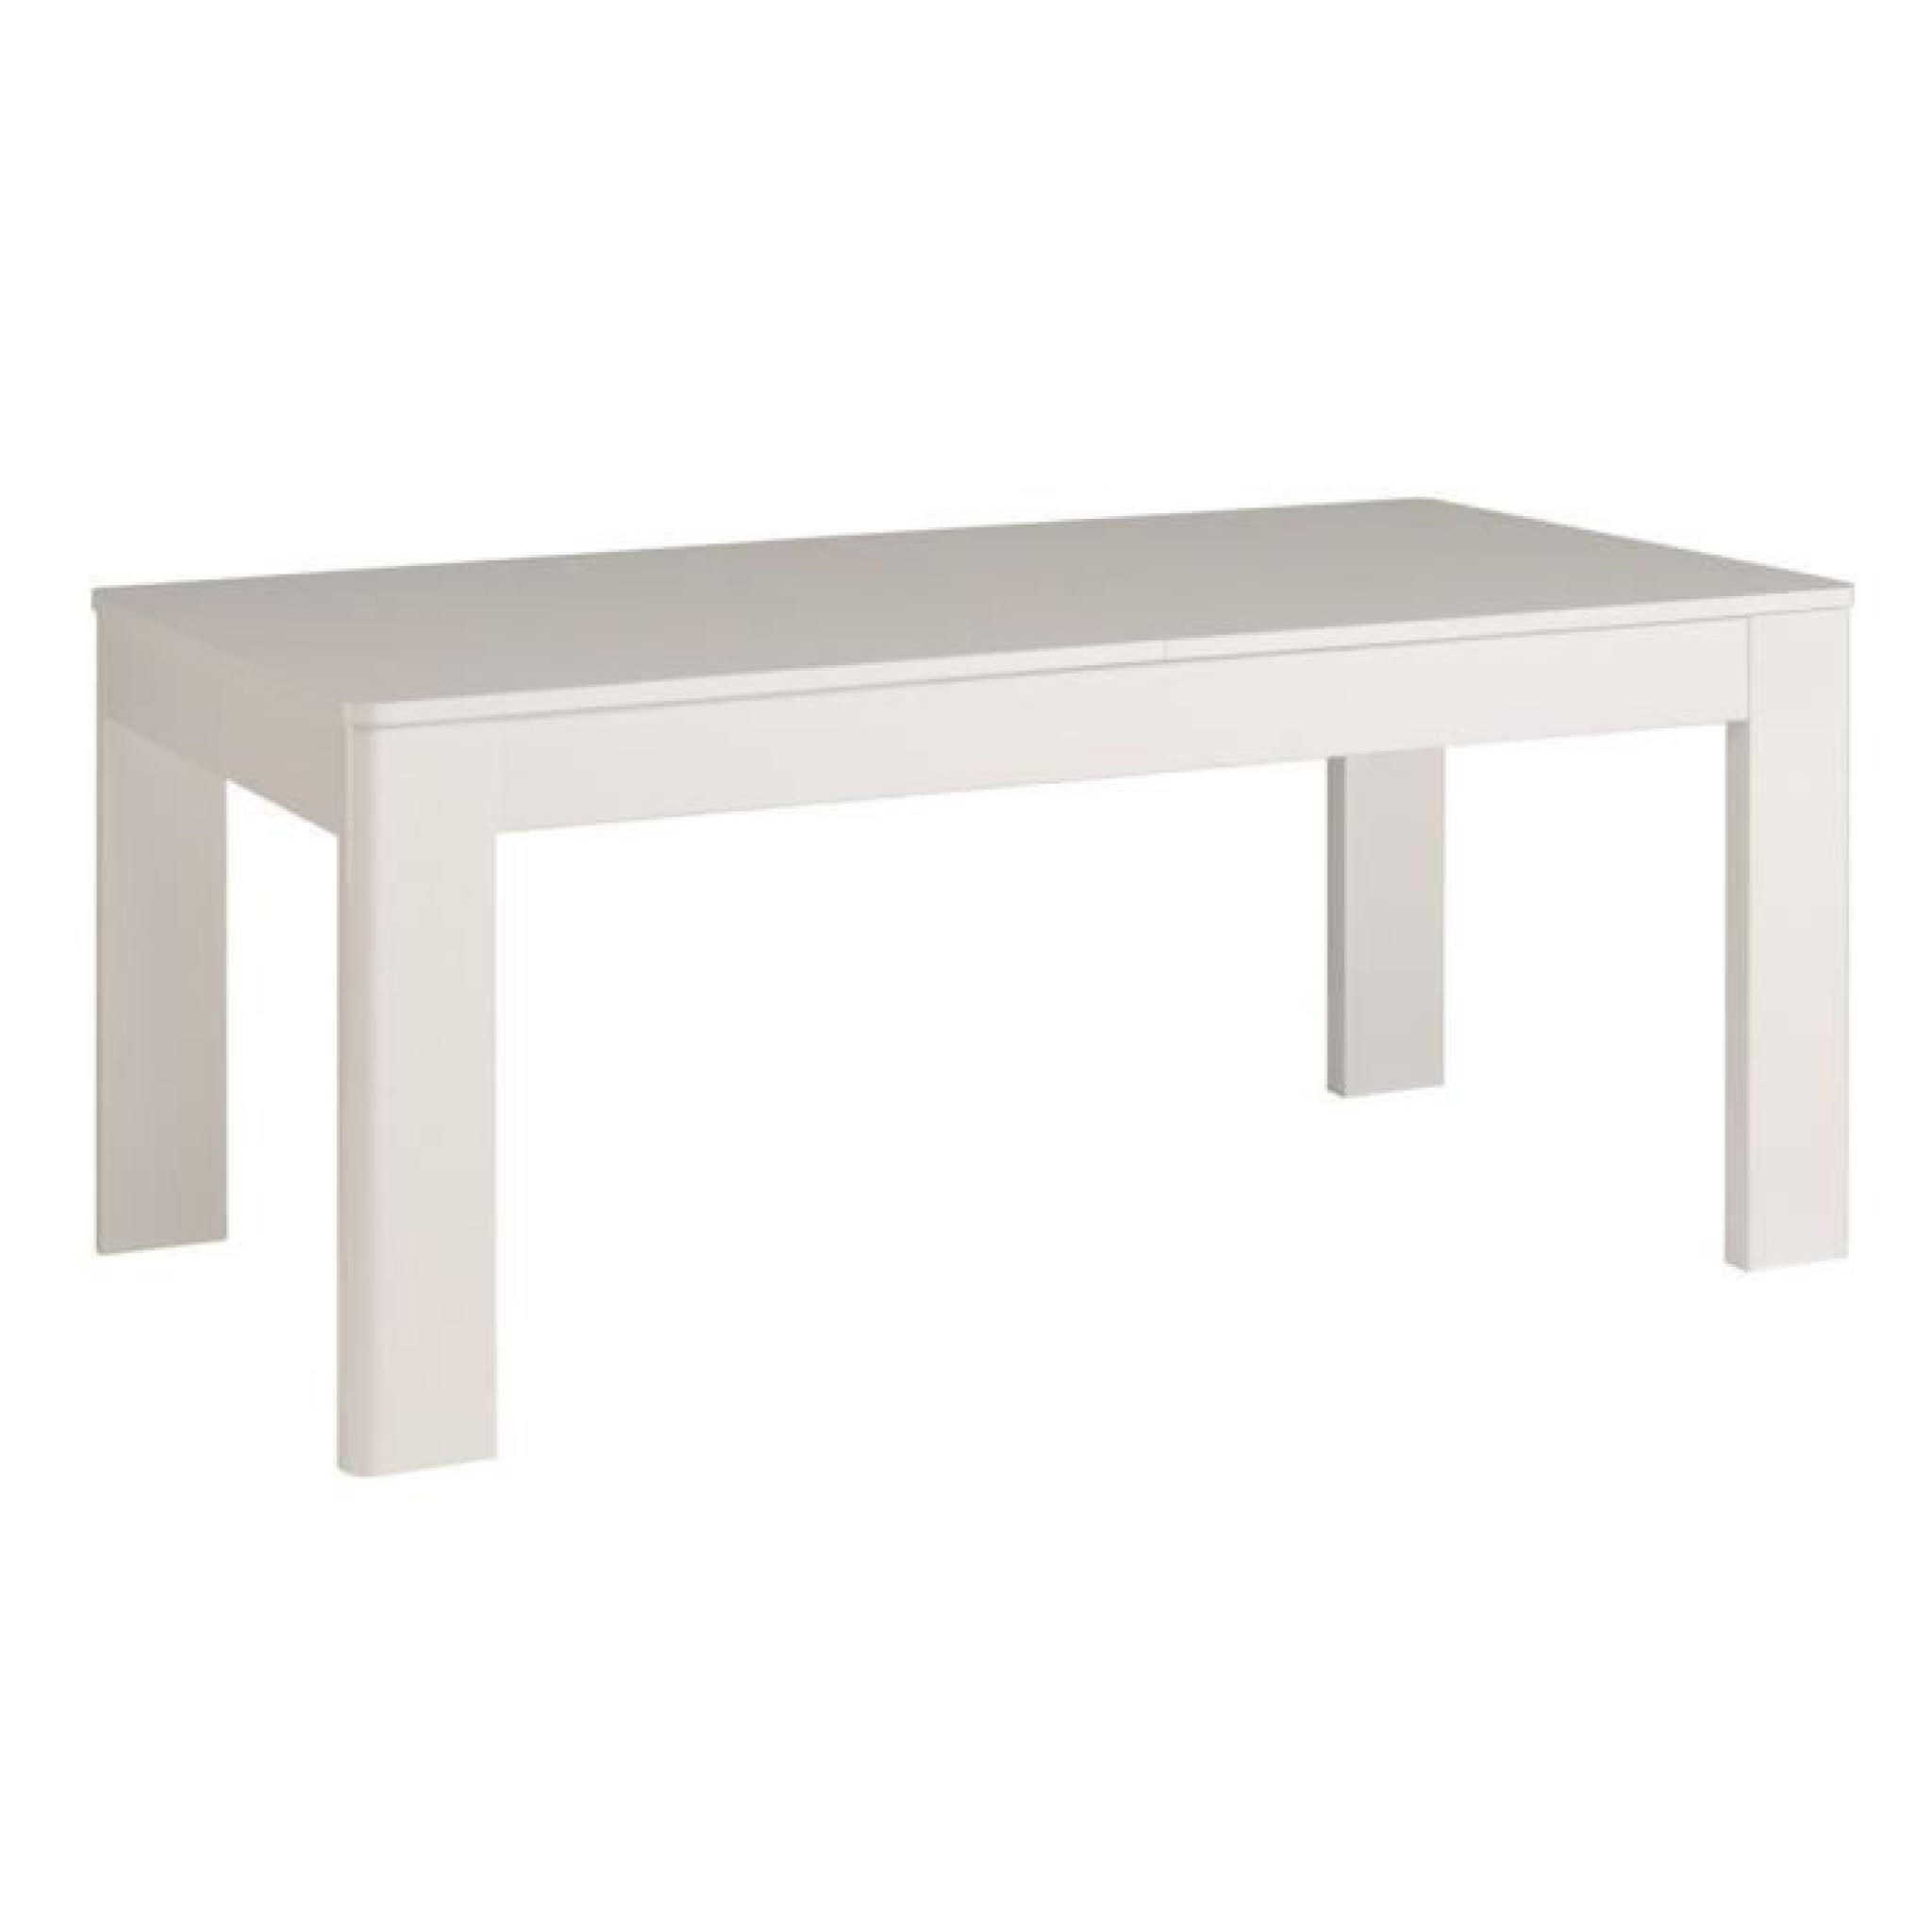 Table de repas avec allonge décor blanc megève, H 77 x L 229 x P 91 cm